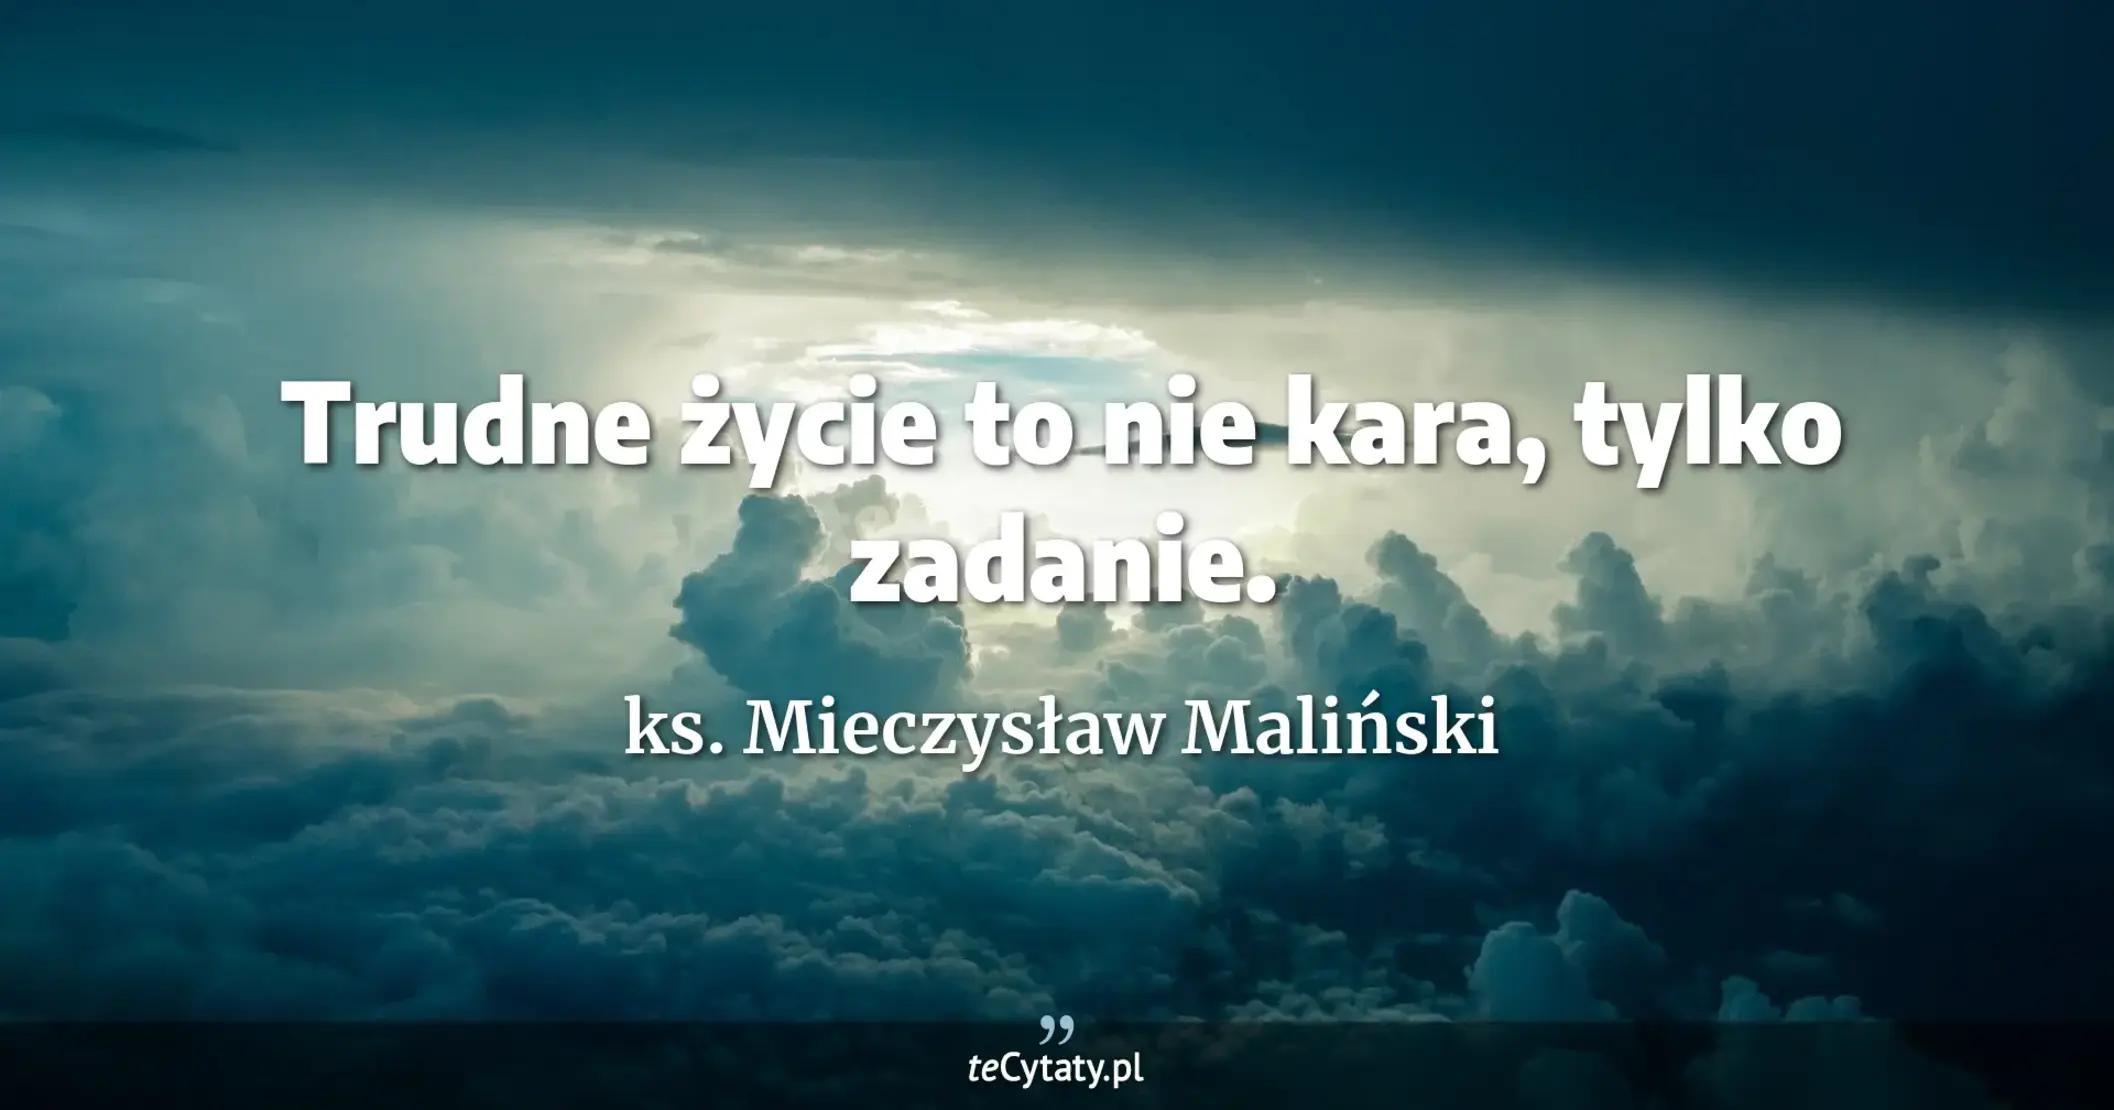 Trudne życie to nie kara, tylko zadanie. - ks. Mieczysław Maliński